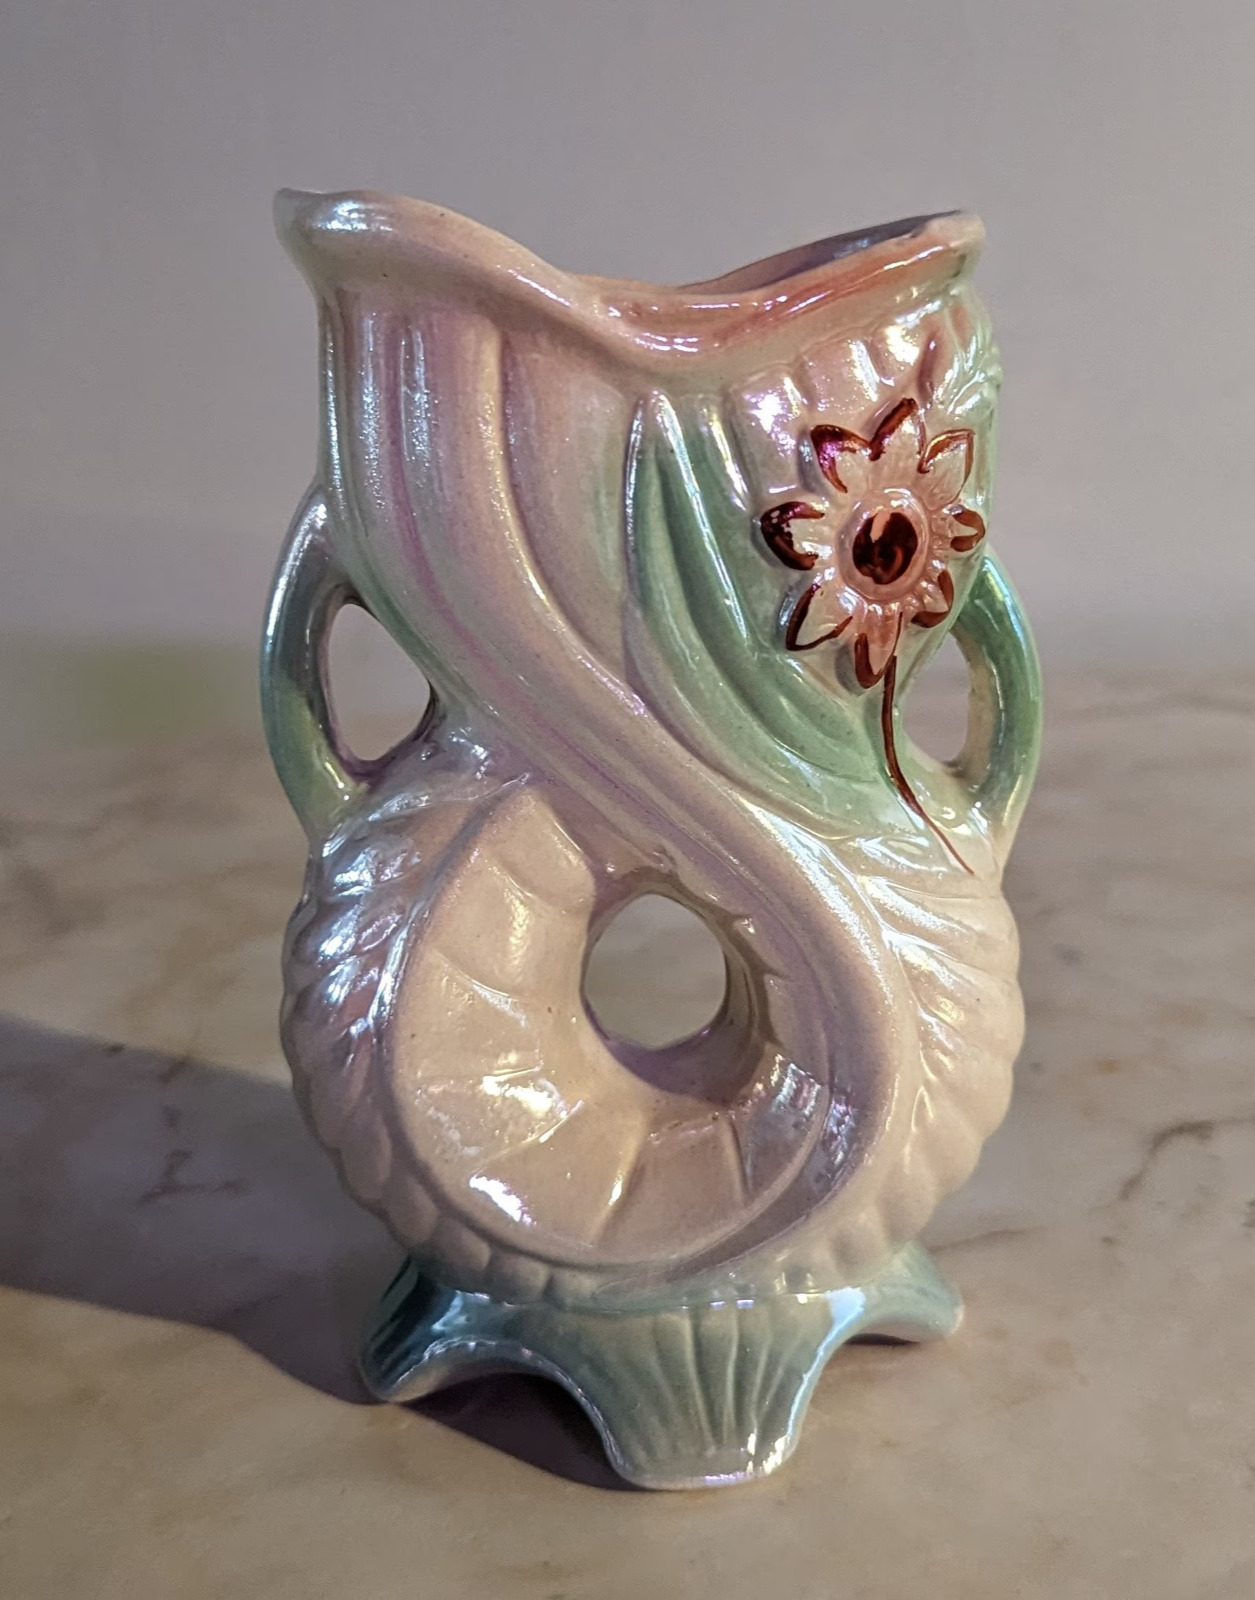 Vintage K's Collection Glazed Porcelain Vase made in Brazil, Floral Pattern